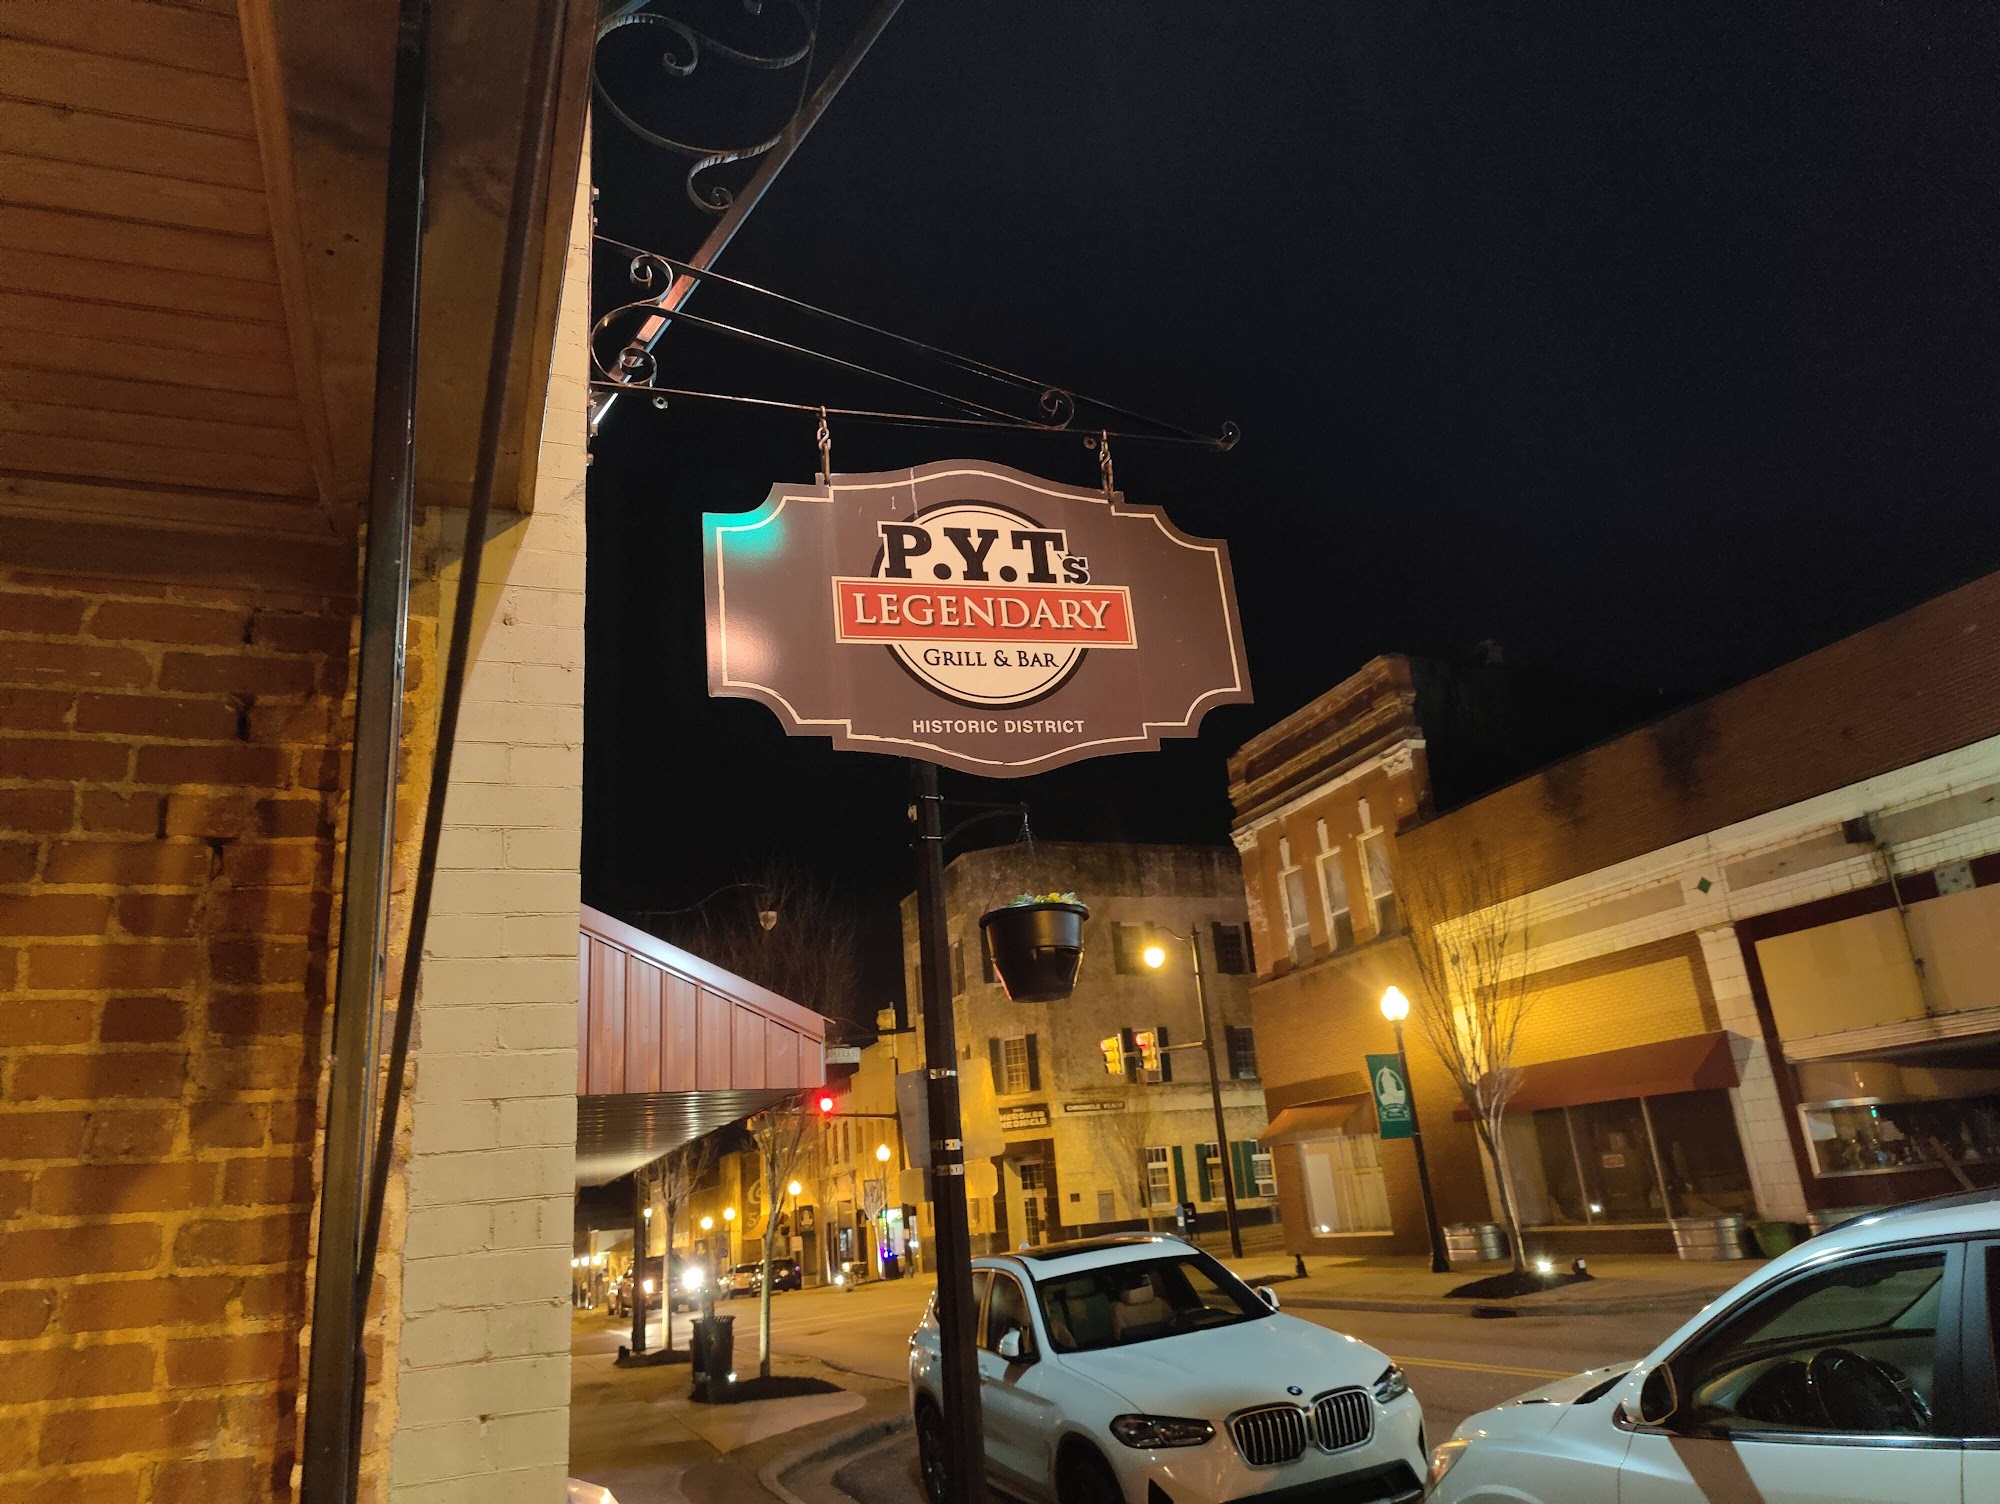 P.Y.Ts Legendary Grill & Bar